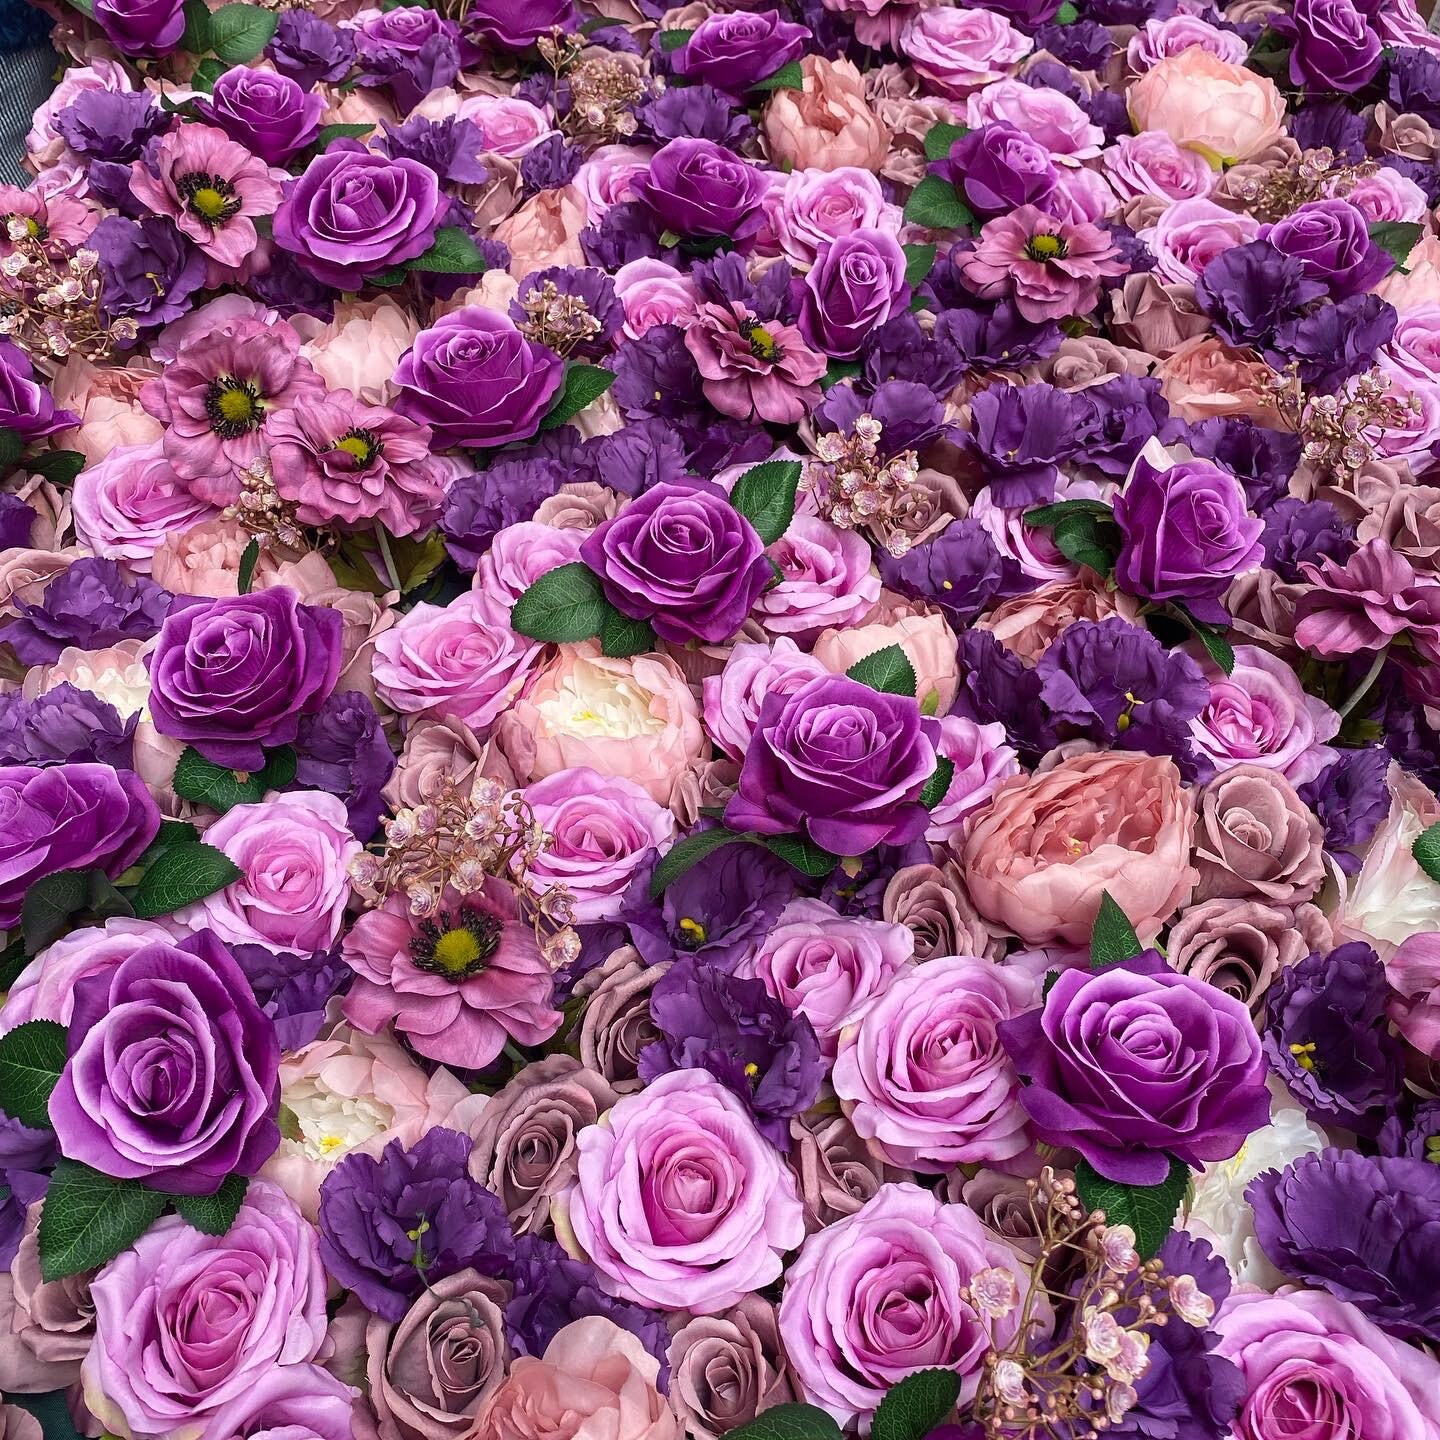 Mur de fleurs violettes mur floral violet mur de fleurs - Etsy France